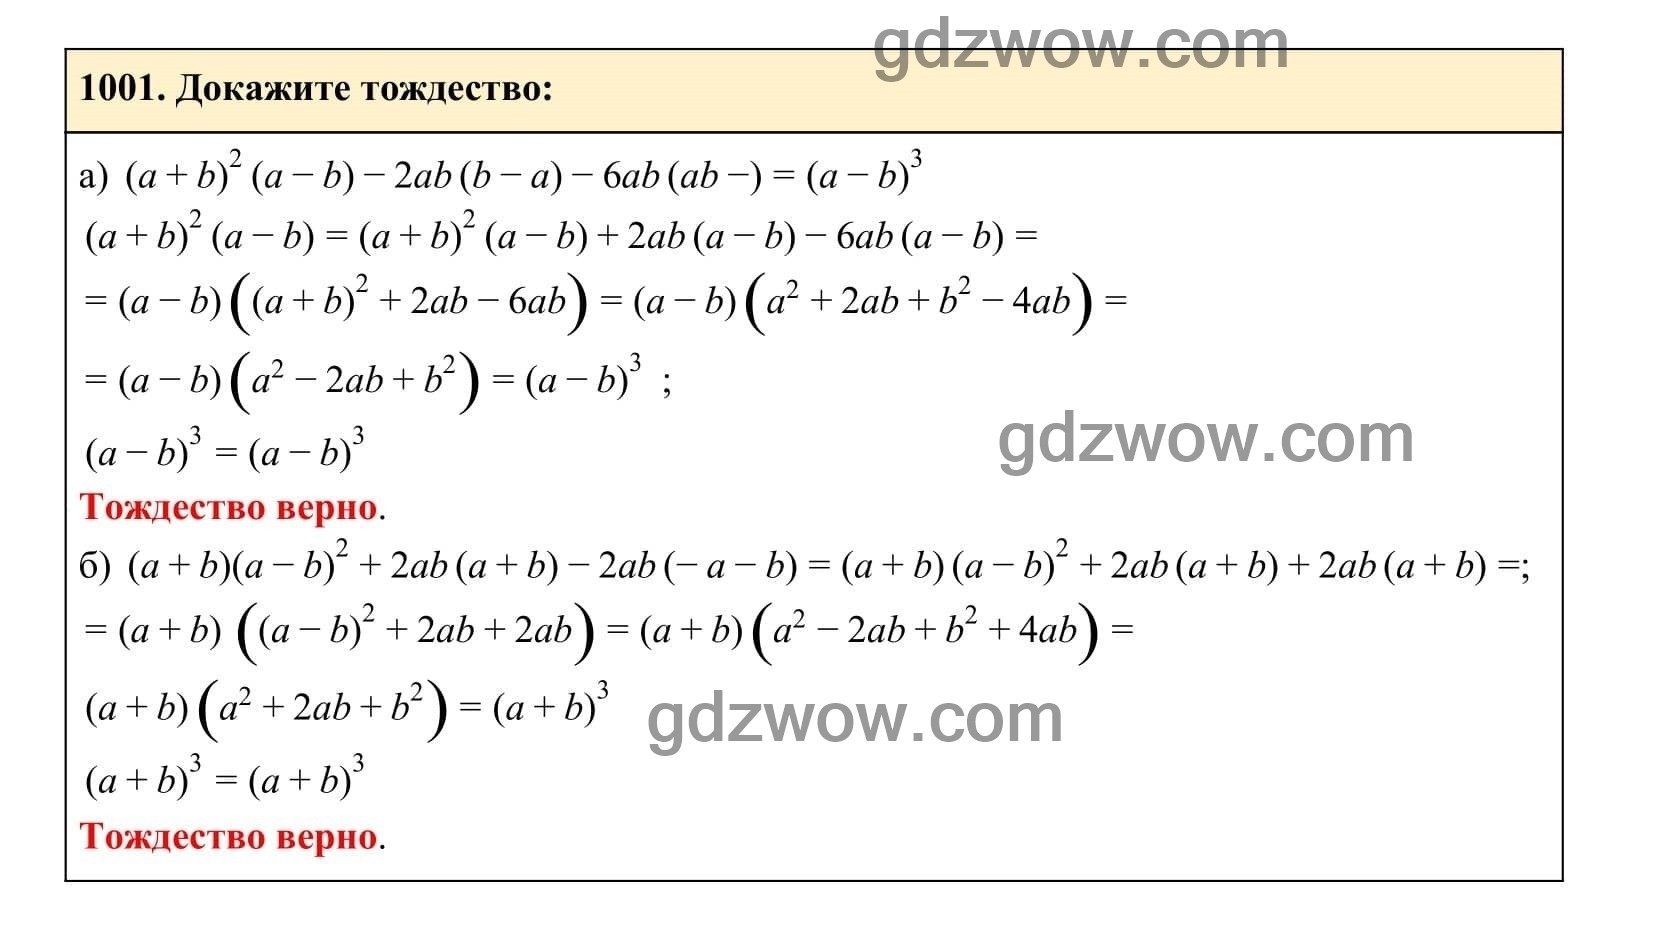 Упражнение 1001 - ГДЗ по Алгебре 7 класс Учебник Макарычев (решебник) - GDZwow